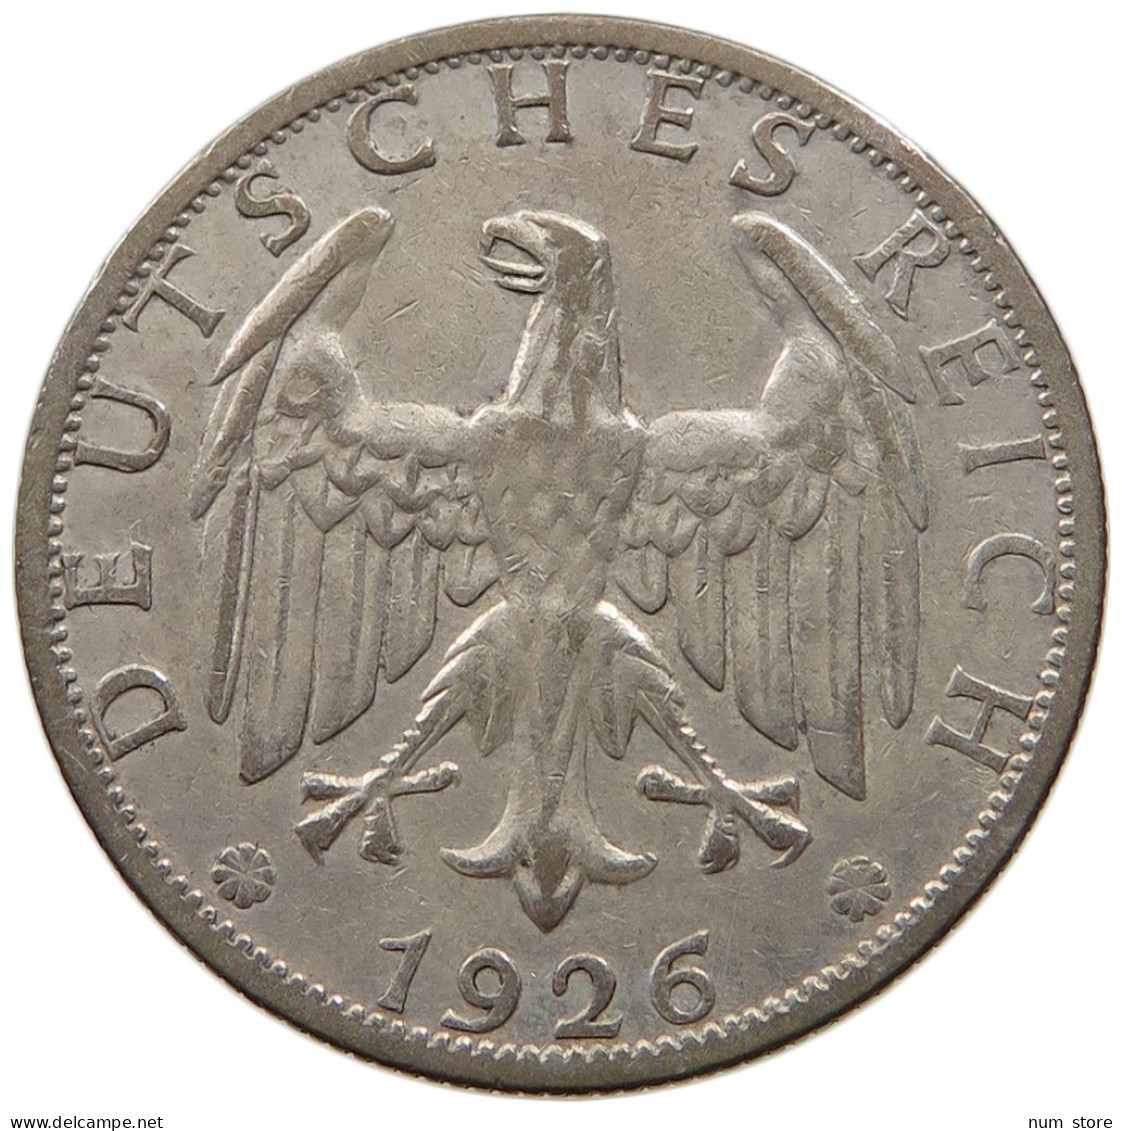 WEIMARER REPUBLIK 2 MARK 1926 A WEIMAR, 2 MARK 1926 A, J. 320 #MA 001519 - 2 Reichsmark